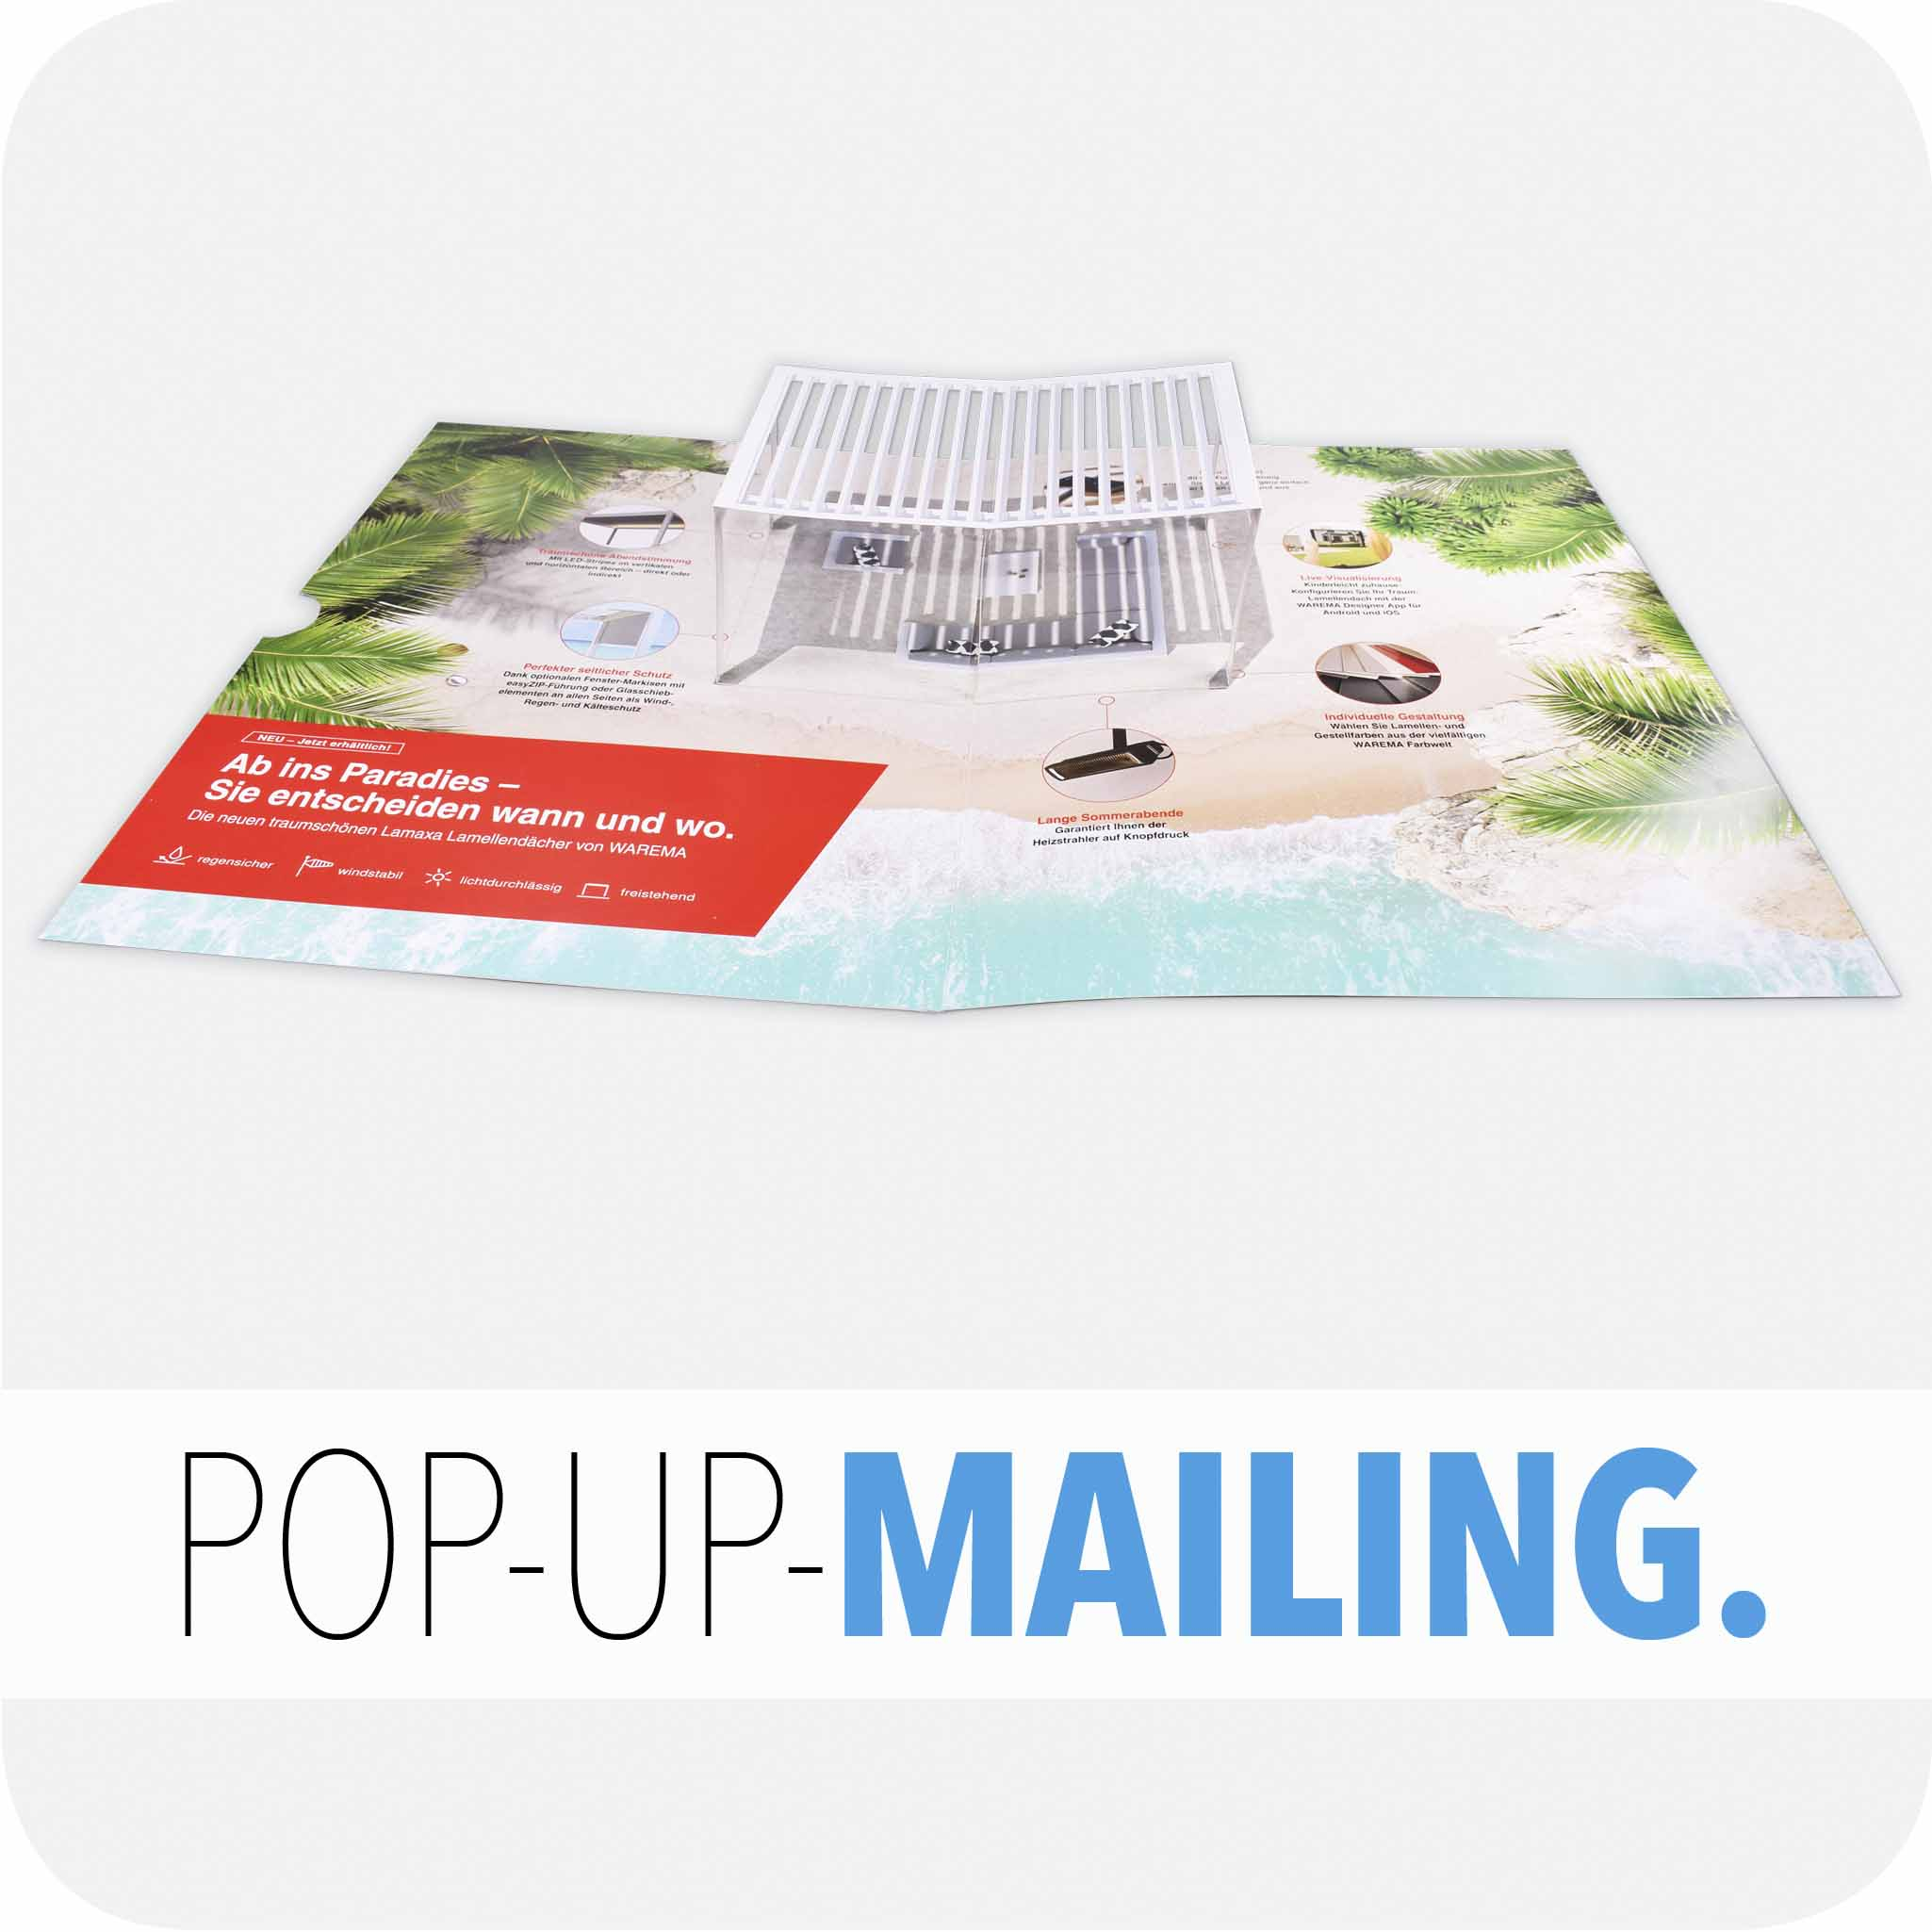 Pop-up mailing